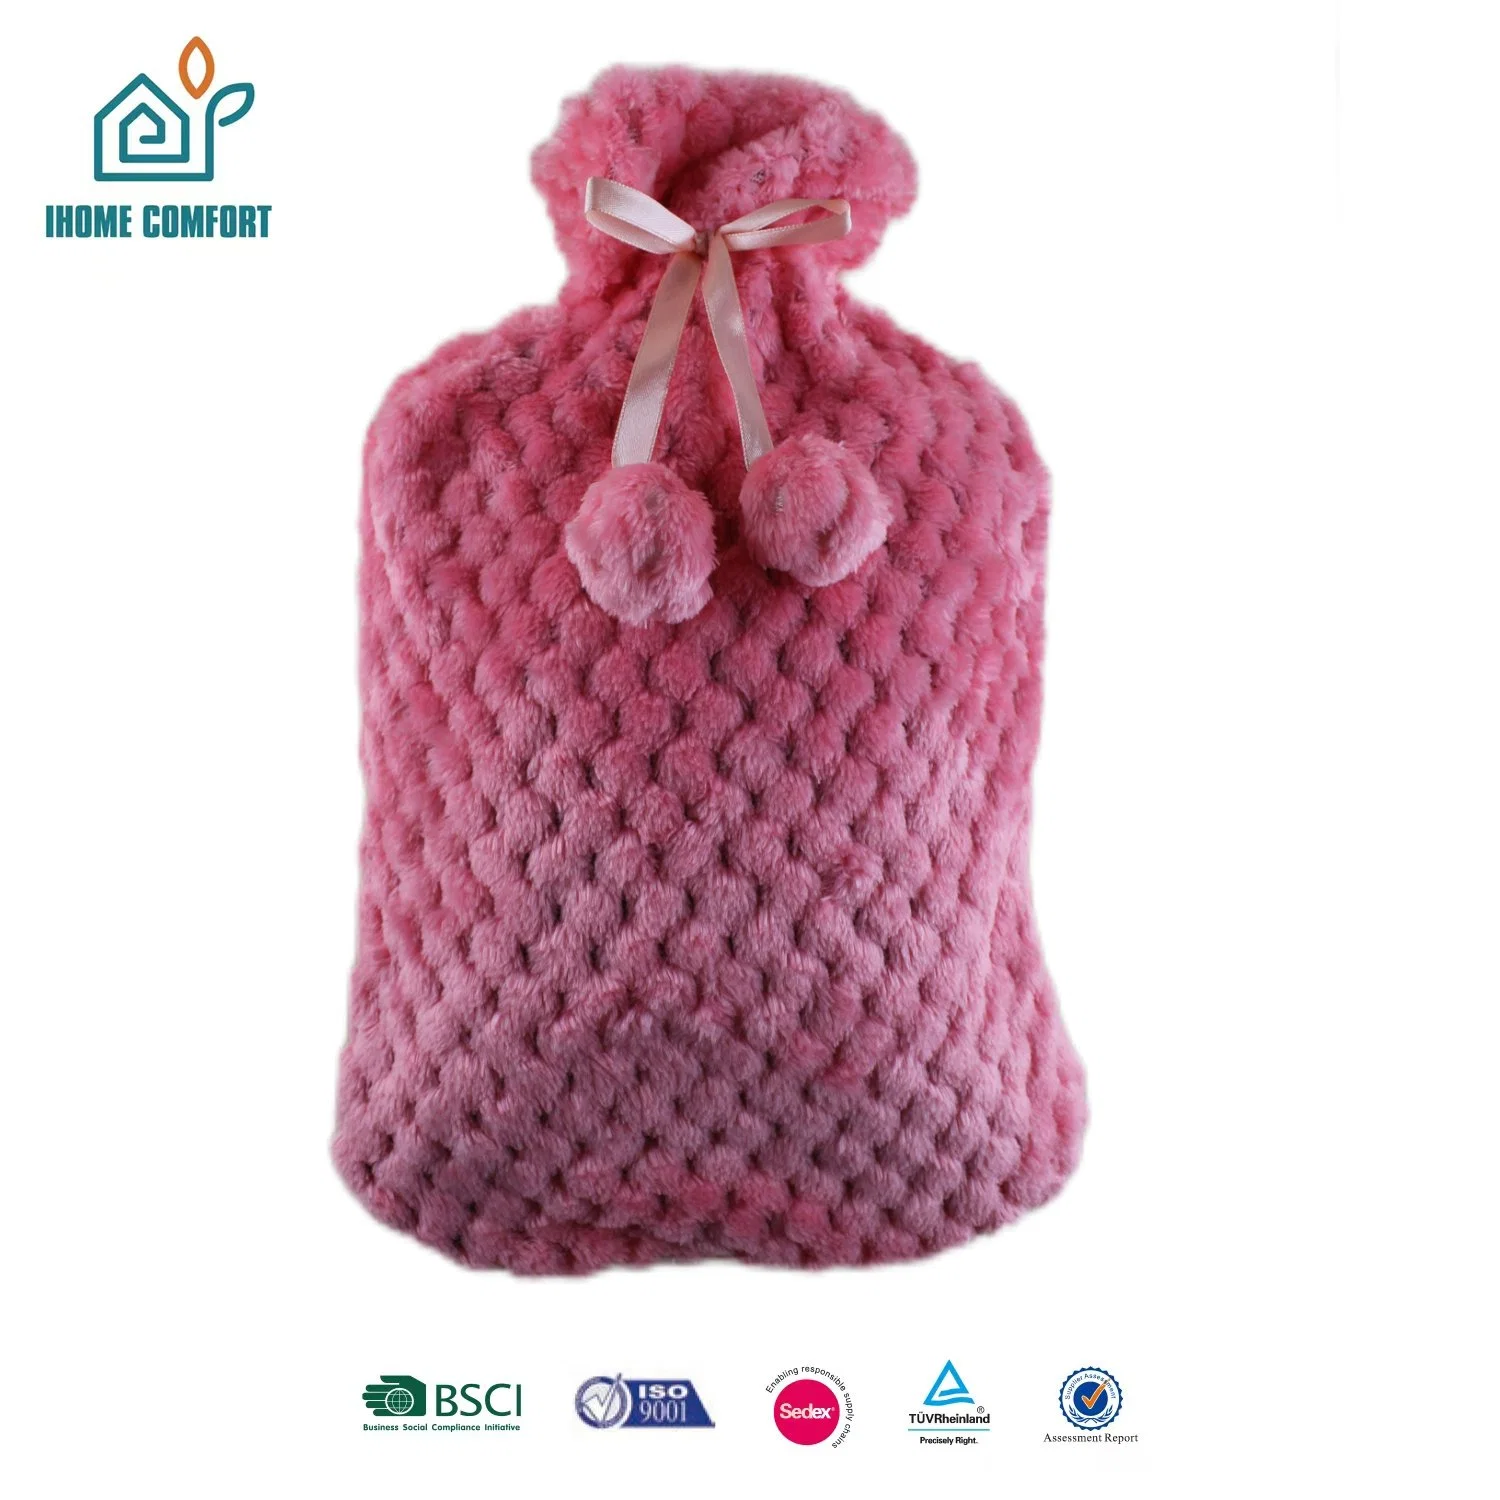 Billig Handwärmer Portable Hot Water Bag Tägliche Verwendung Produkte Im Winter mit warmem Plüschbezug